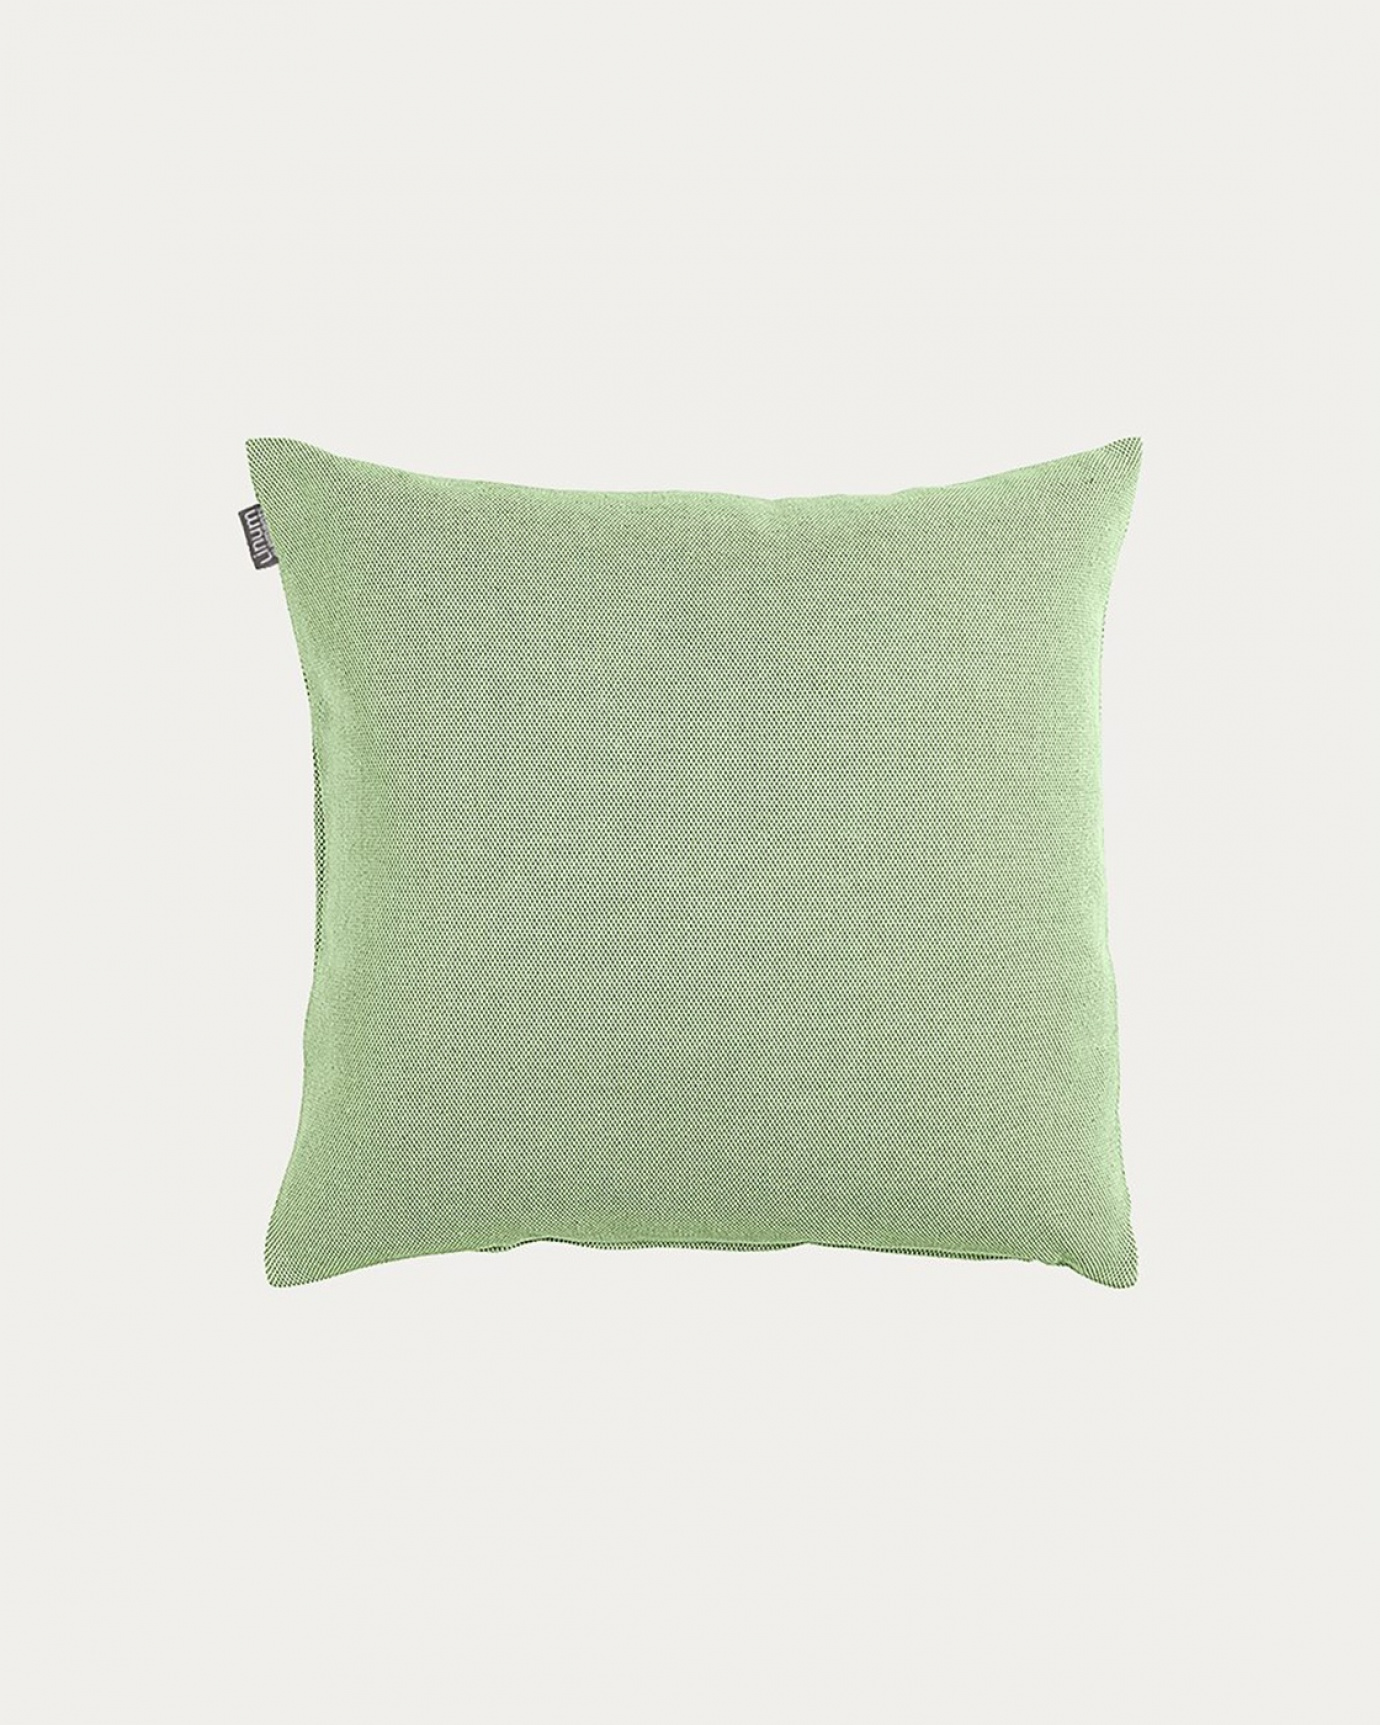 Produktbild dunkles lindengrün PEPPER Kissenhülle aus weicher Baumwolle von LINUM DESIGN. Einfach zu waschen und langlebig für Generationen. Größe 40x40 cm.